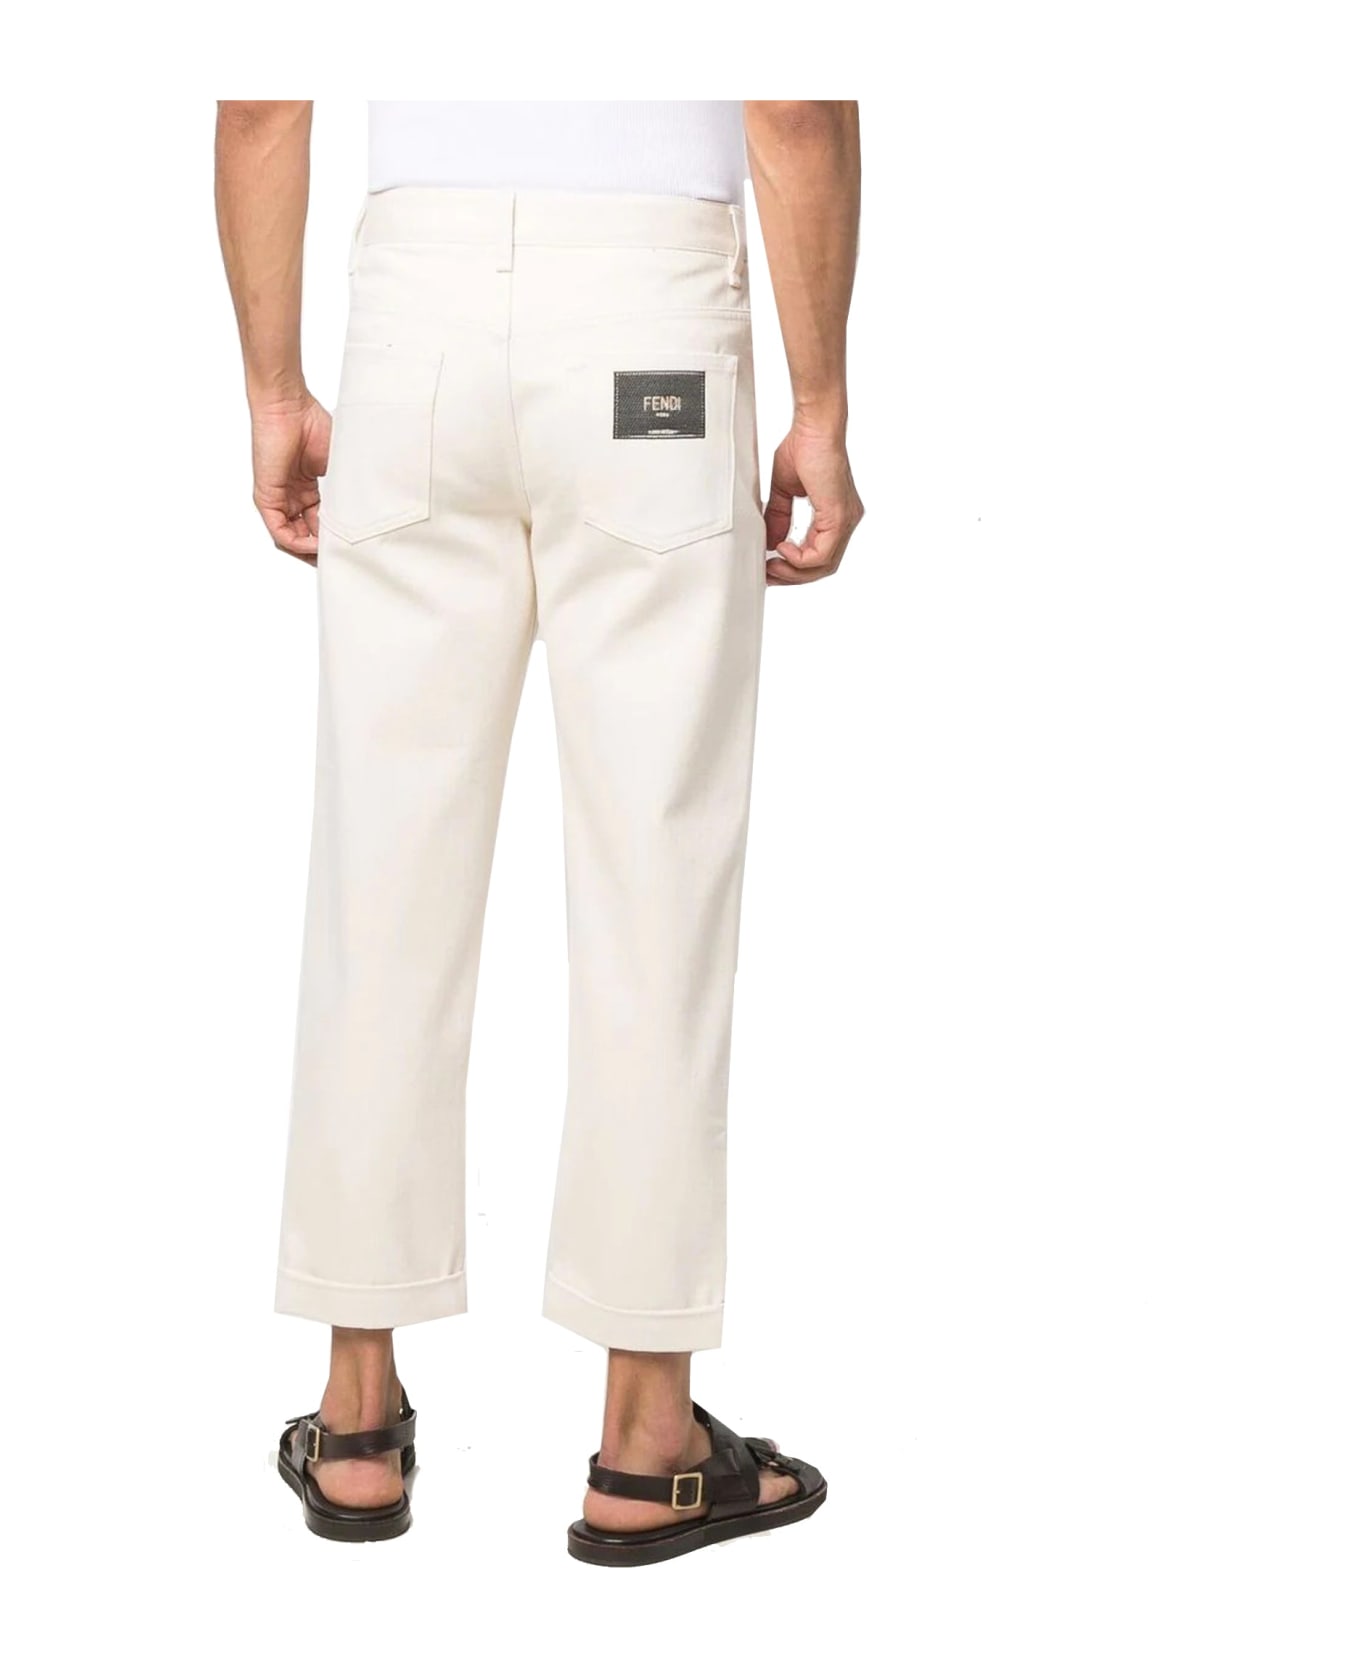 Fendi Denim Jeans - White